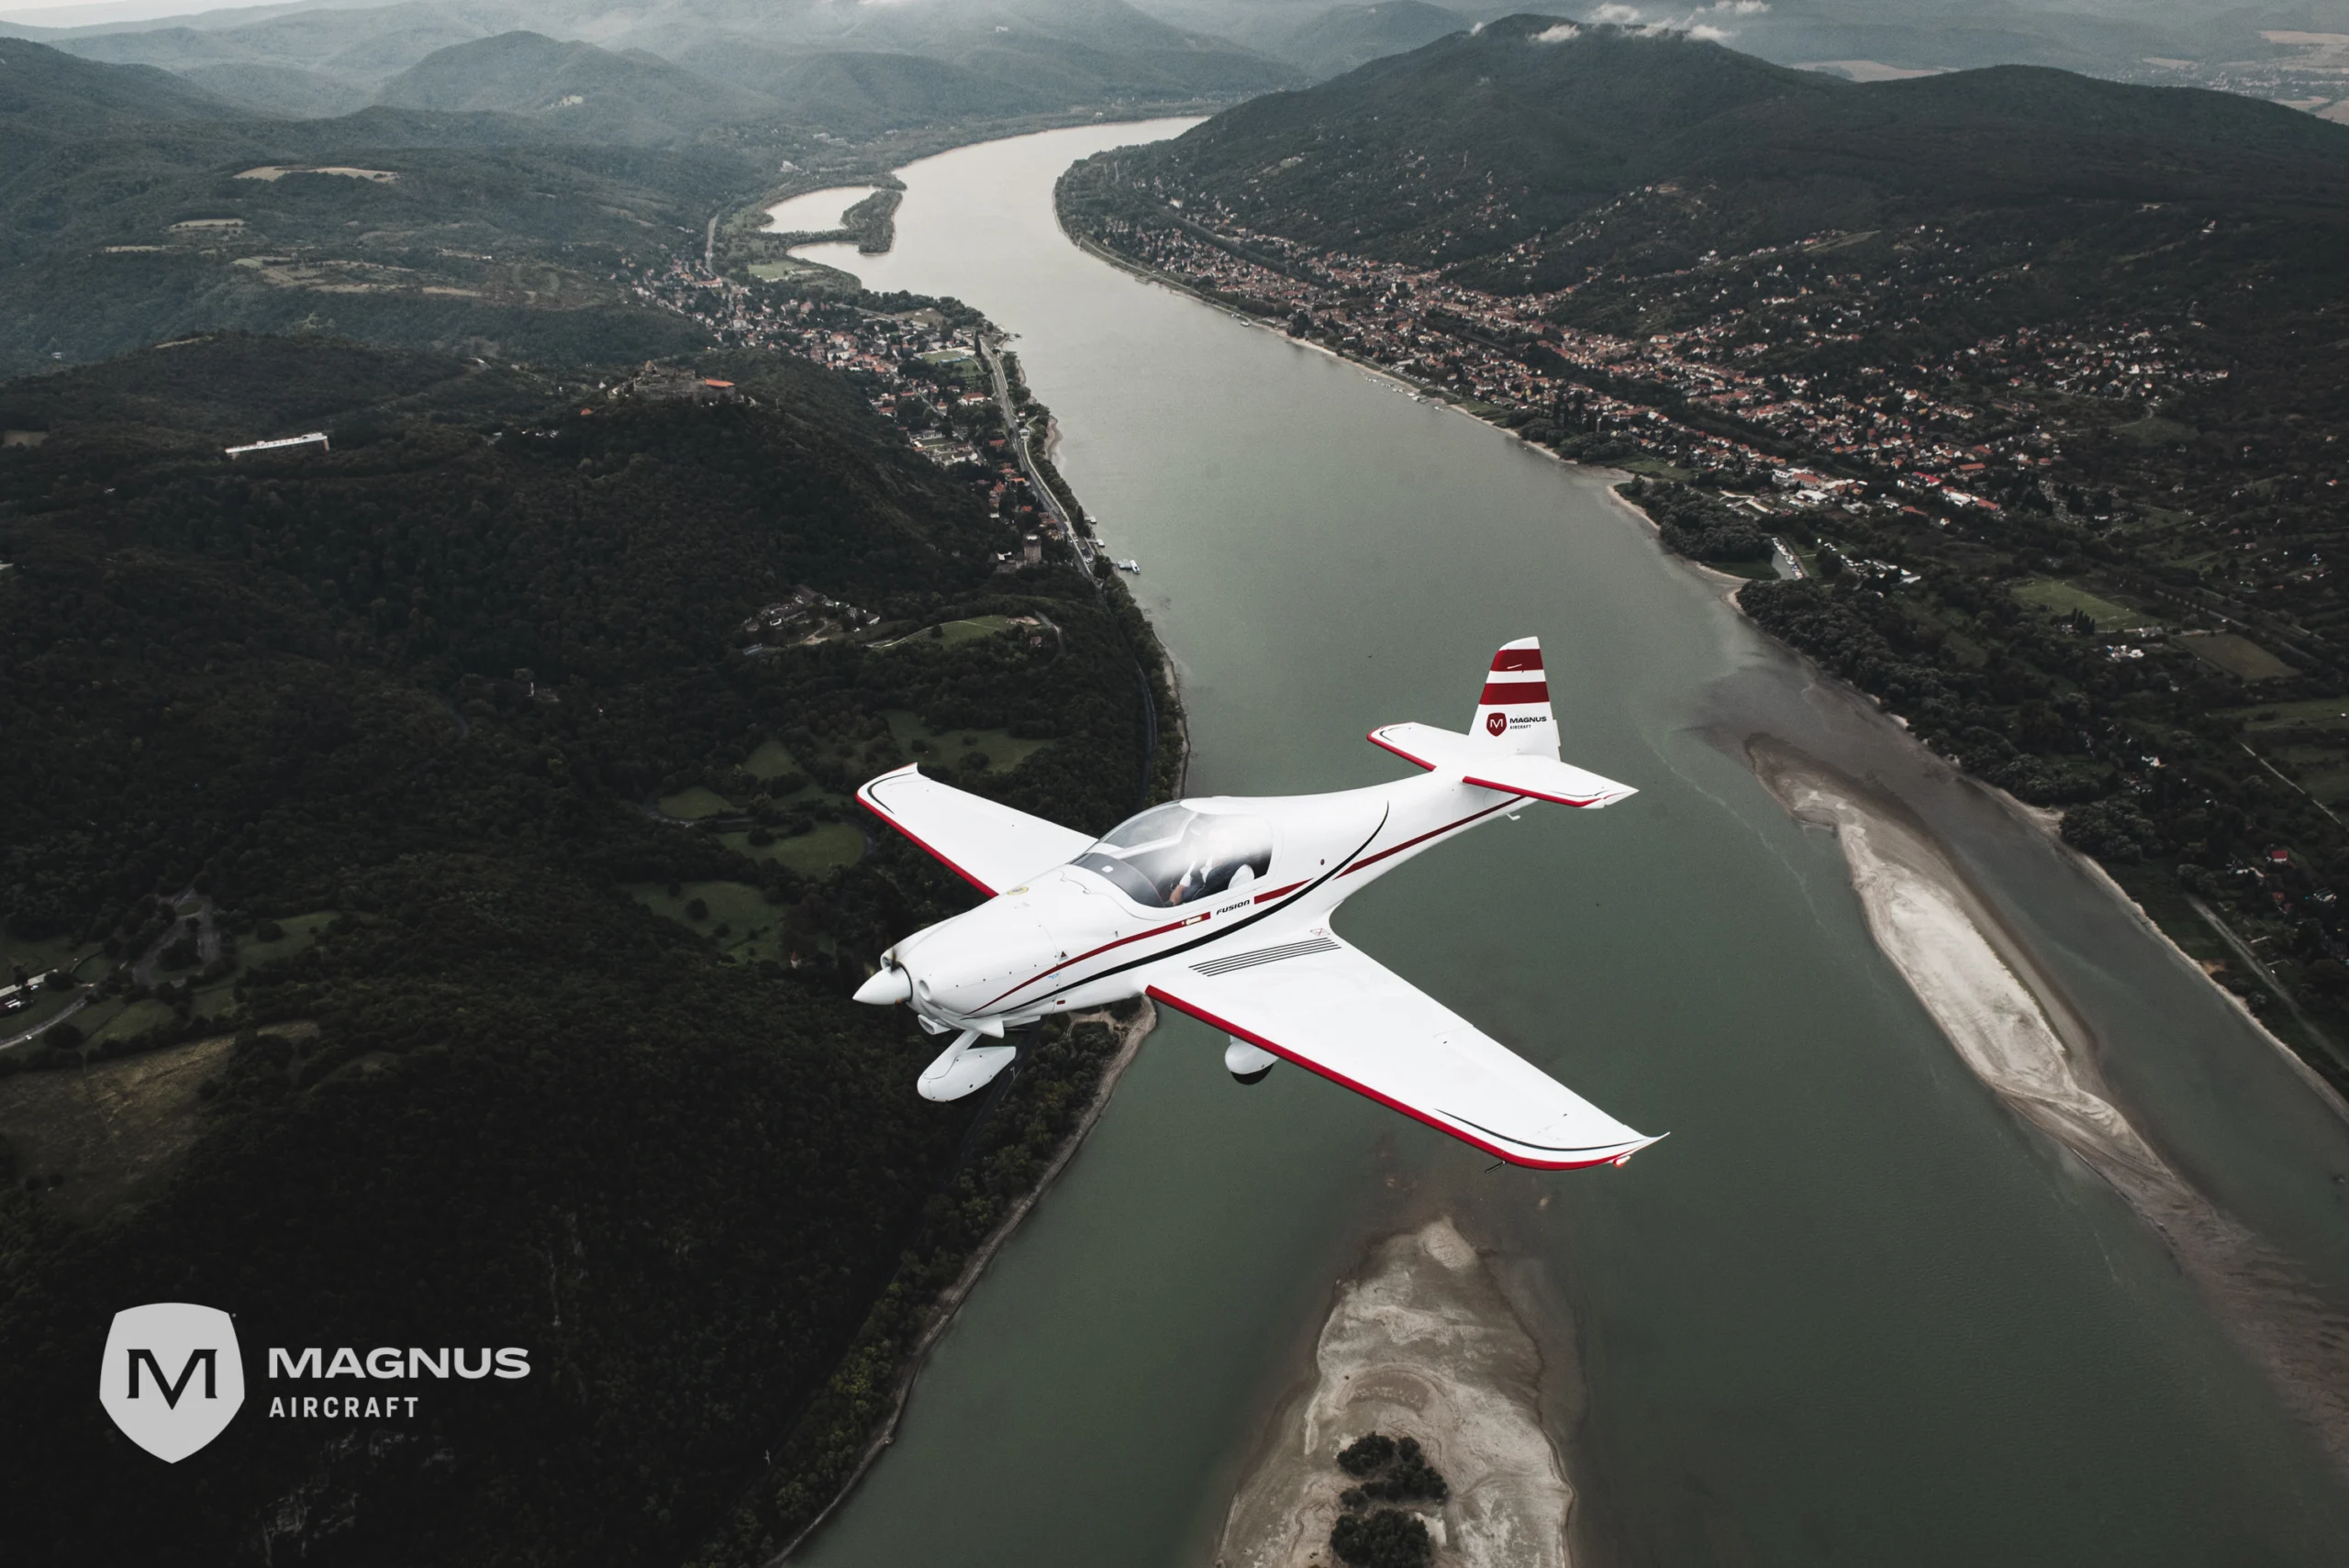 Magnus Aircraft Zrt. - Grundstein für weitere Produktionshalle